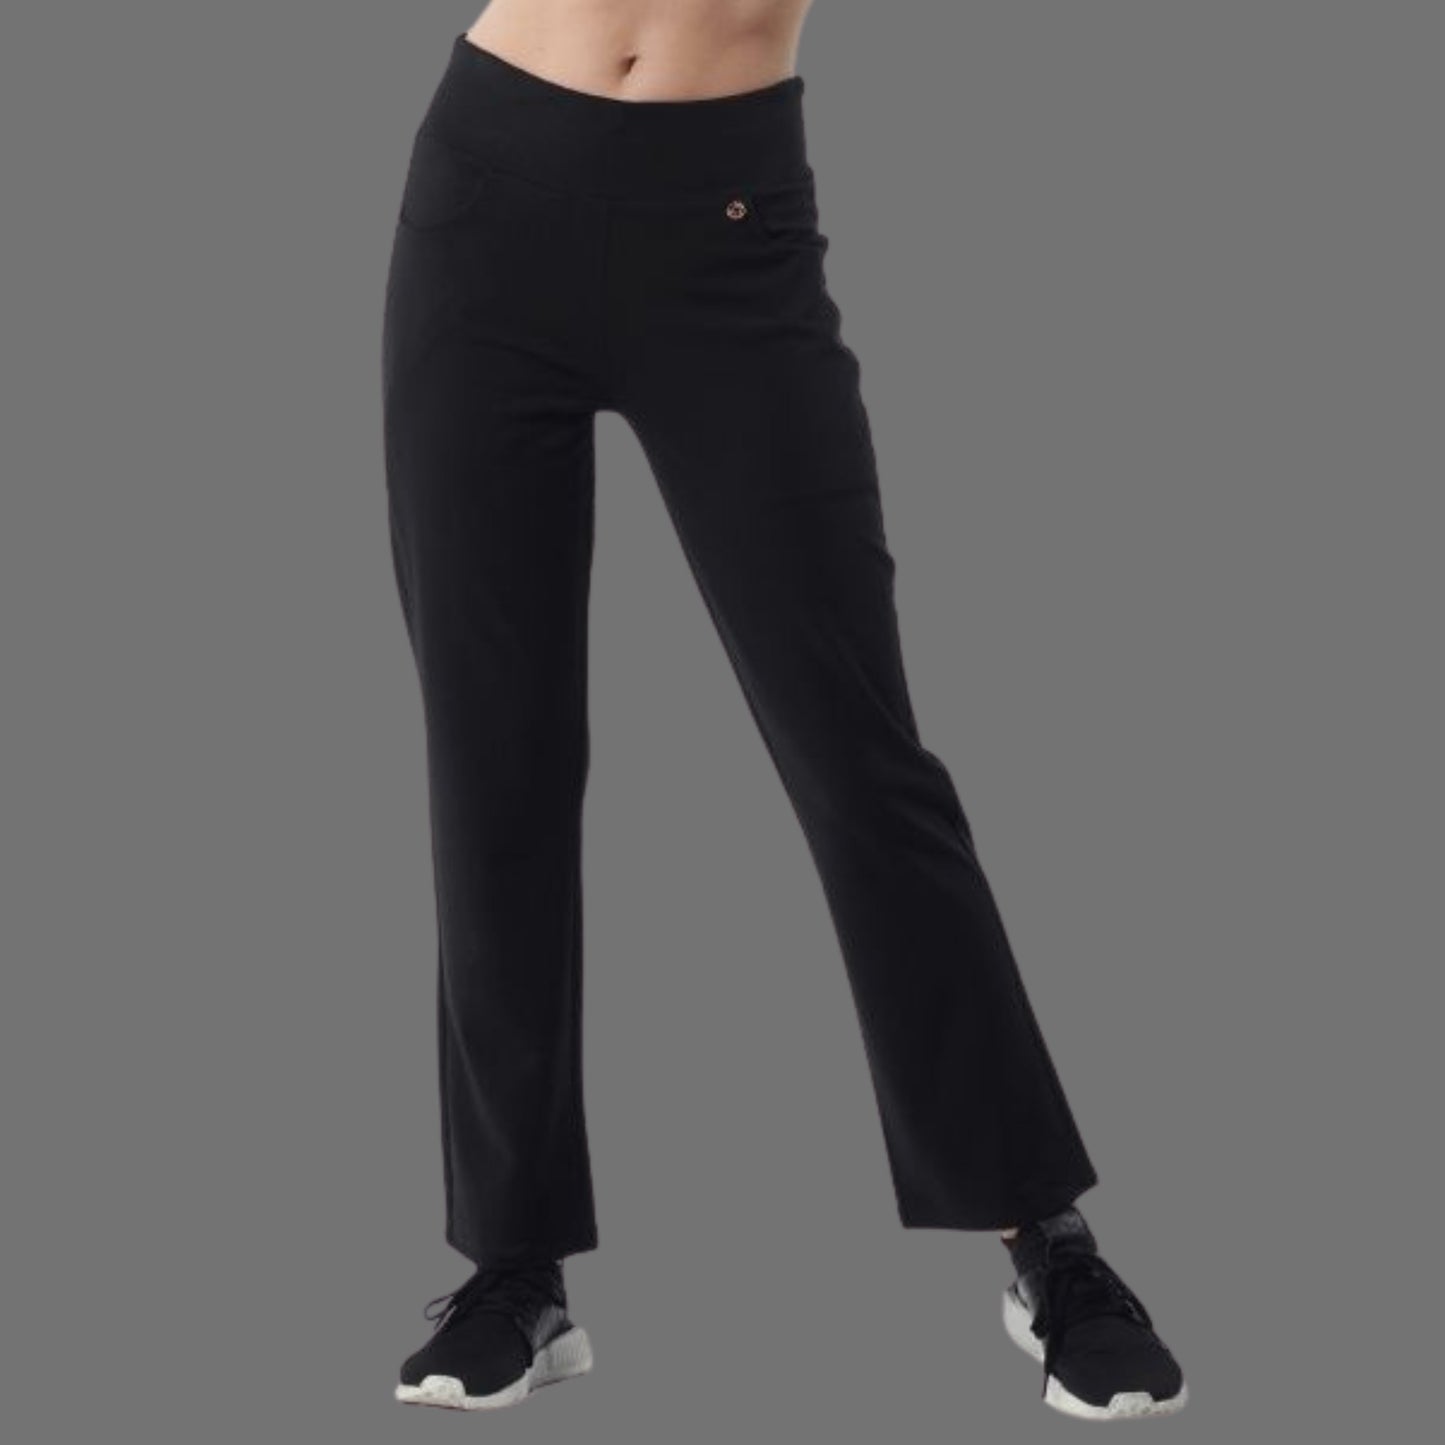 AVIVA Kendra Full Length Straight Cut Women's Long Pants (86-4025)